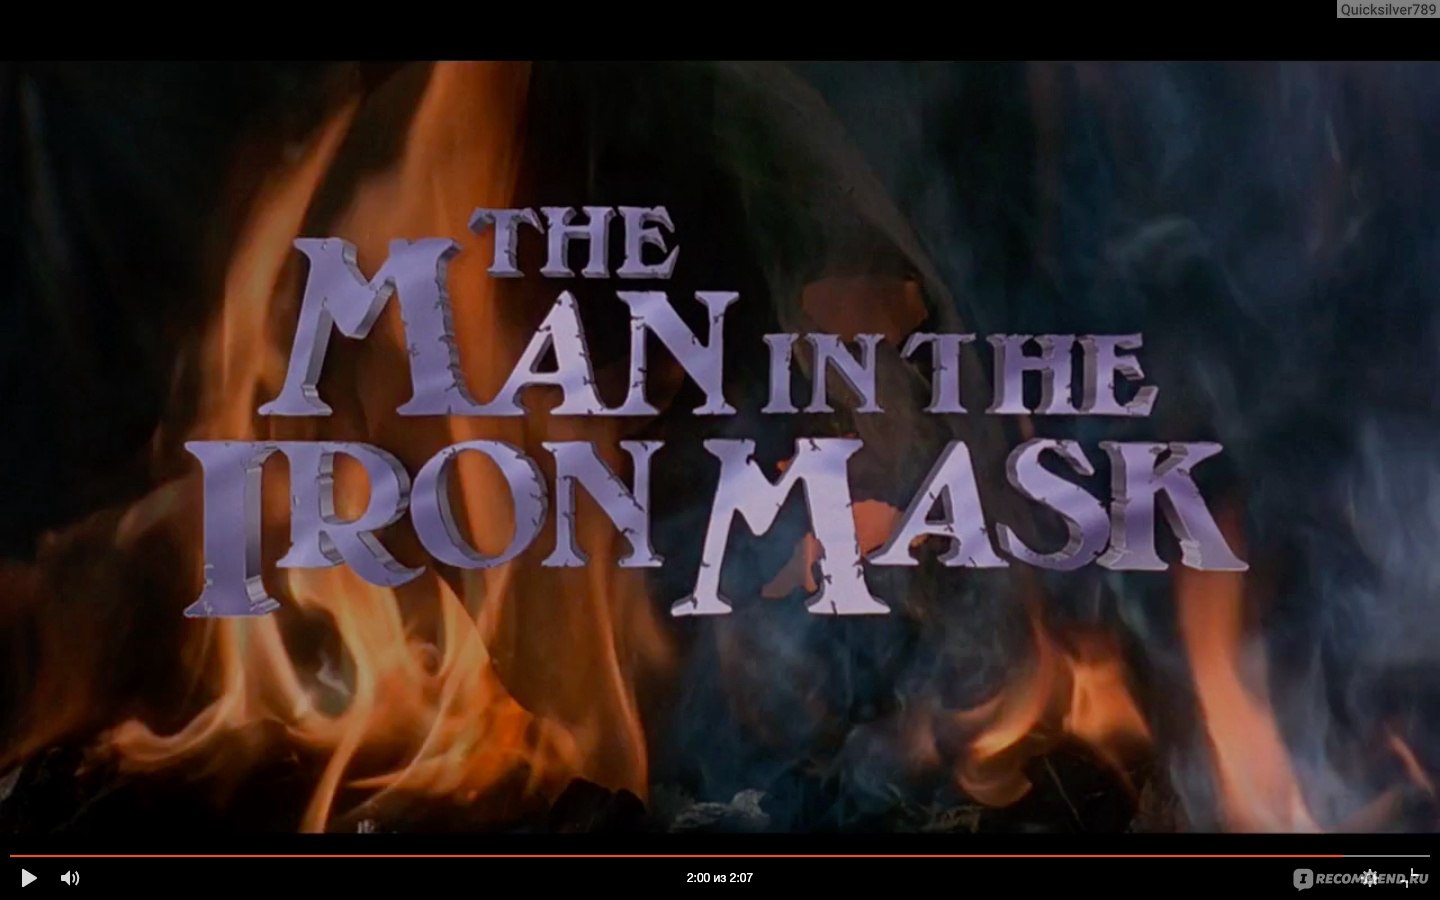 Человек в железной маске (The Man in the Iron Mask) – цитаты из фильма